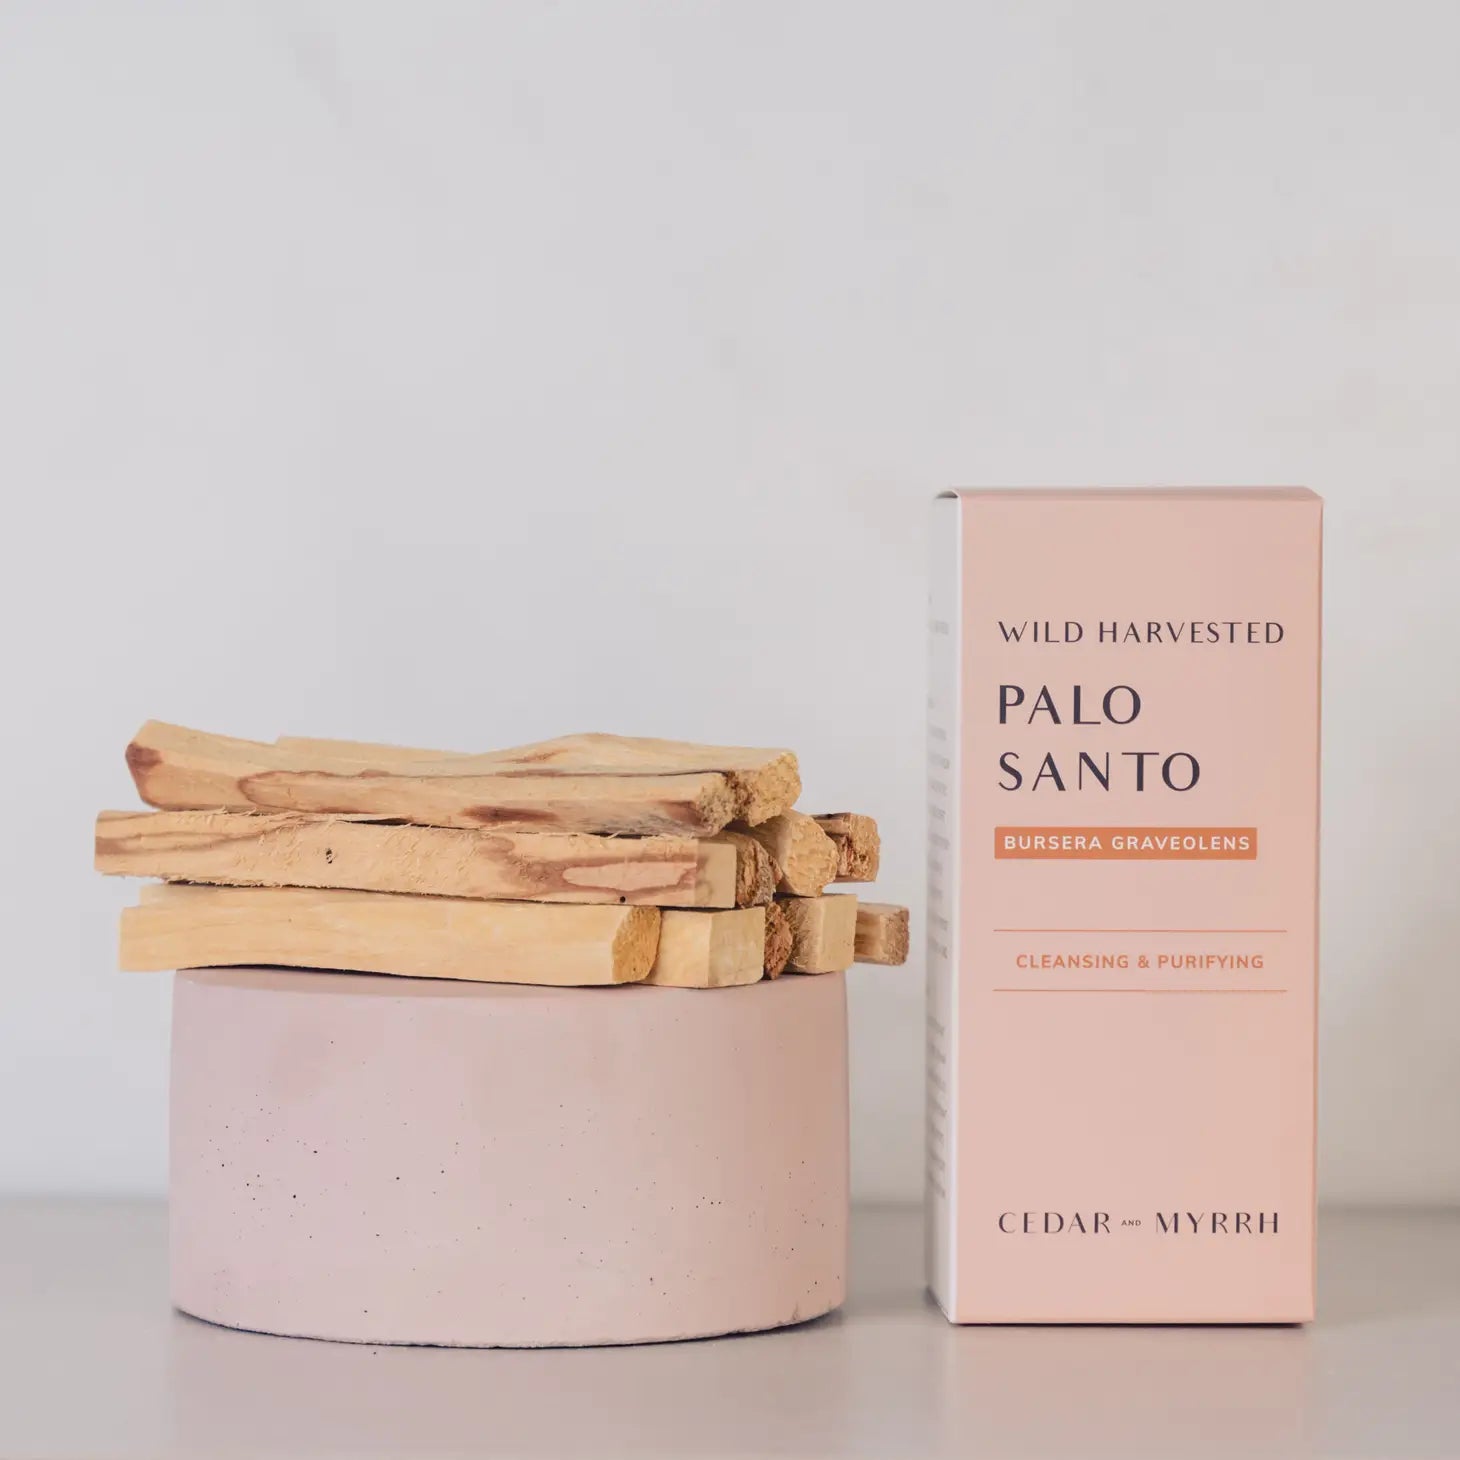 Cedar and Myrrh | Palo Santo Sticks From Ecuador - serenities